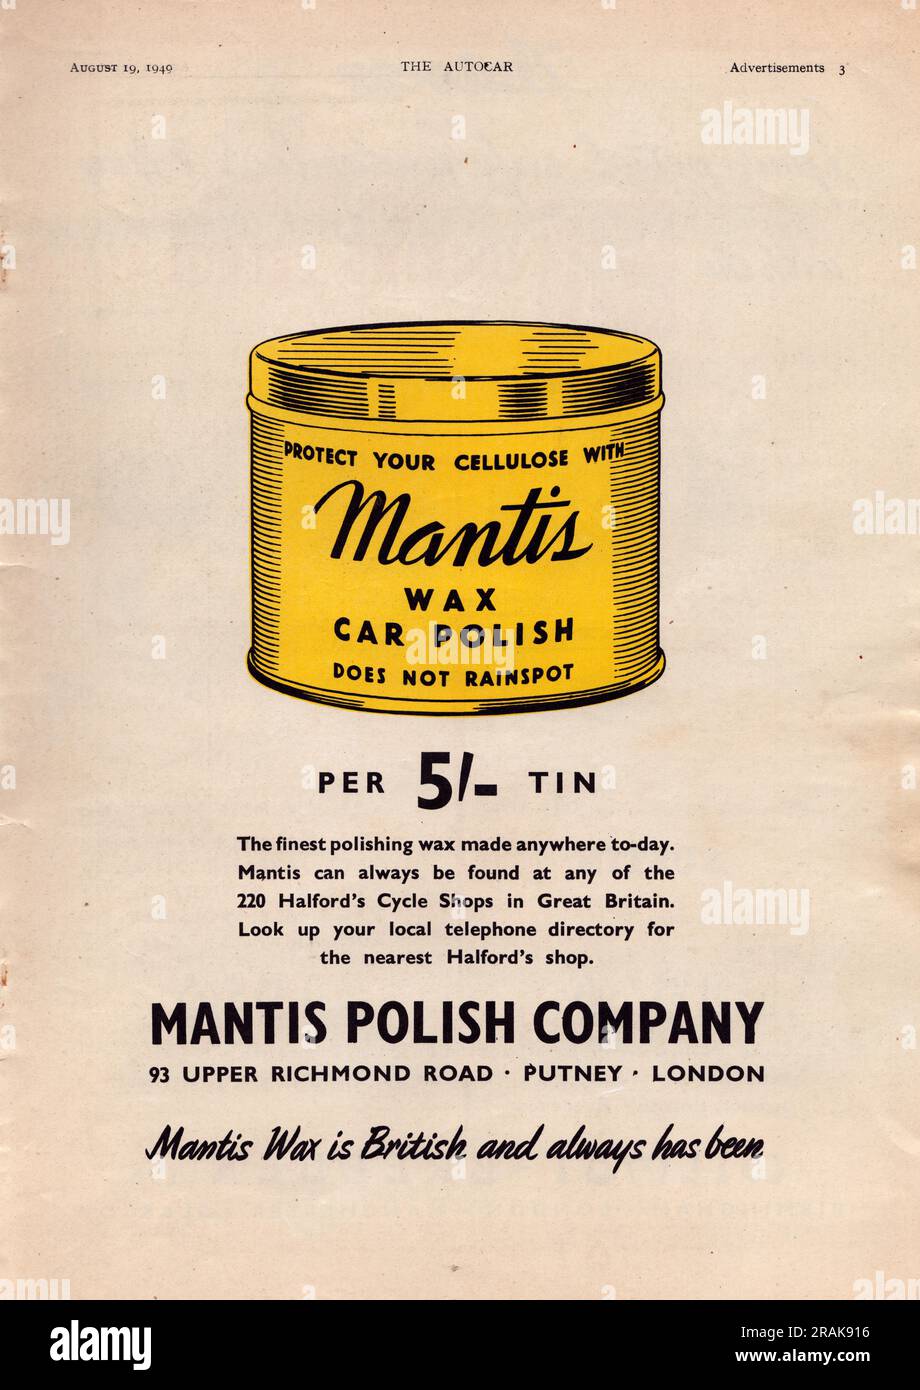 Mantis Polish Comany Cera coche Polisproteja su celulosa con Mantis car cera polish viejo anuncio de la vendimia de una revista de coches del Reino Unido 1949 Foto de stock